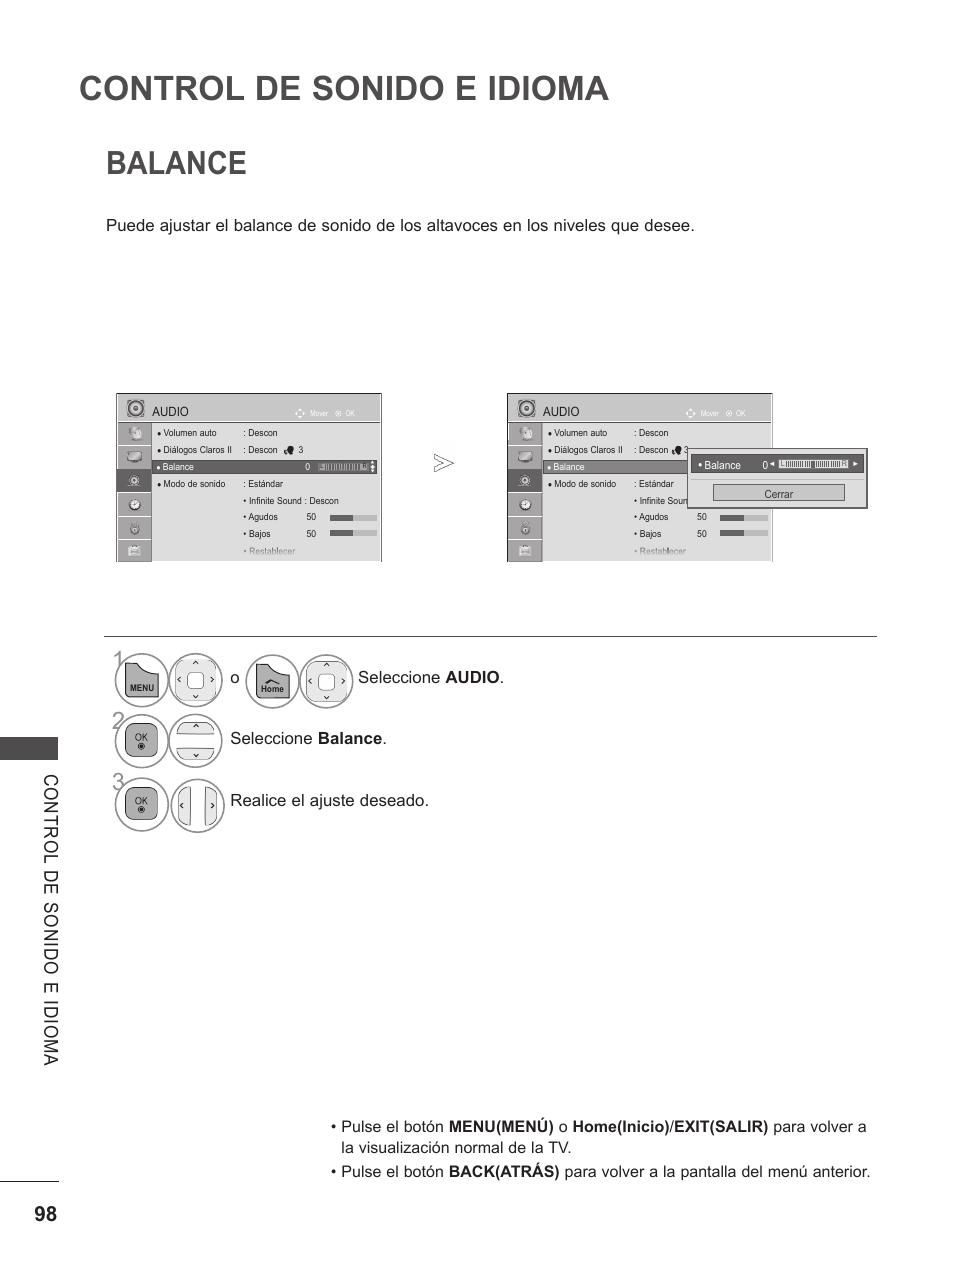 Balance, Control de sonido e idioma, O seleccione audio | Seleccione balance, Realice el ajuste deseado | LG 37LD650H Manual del usuario | Página 124 / 164